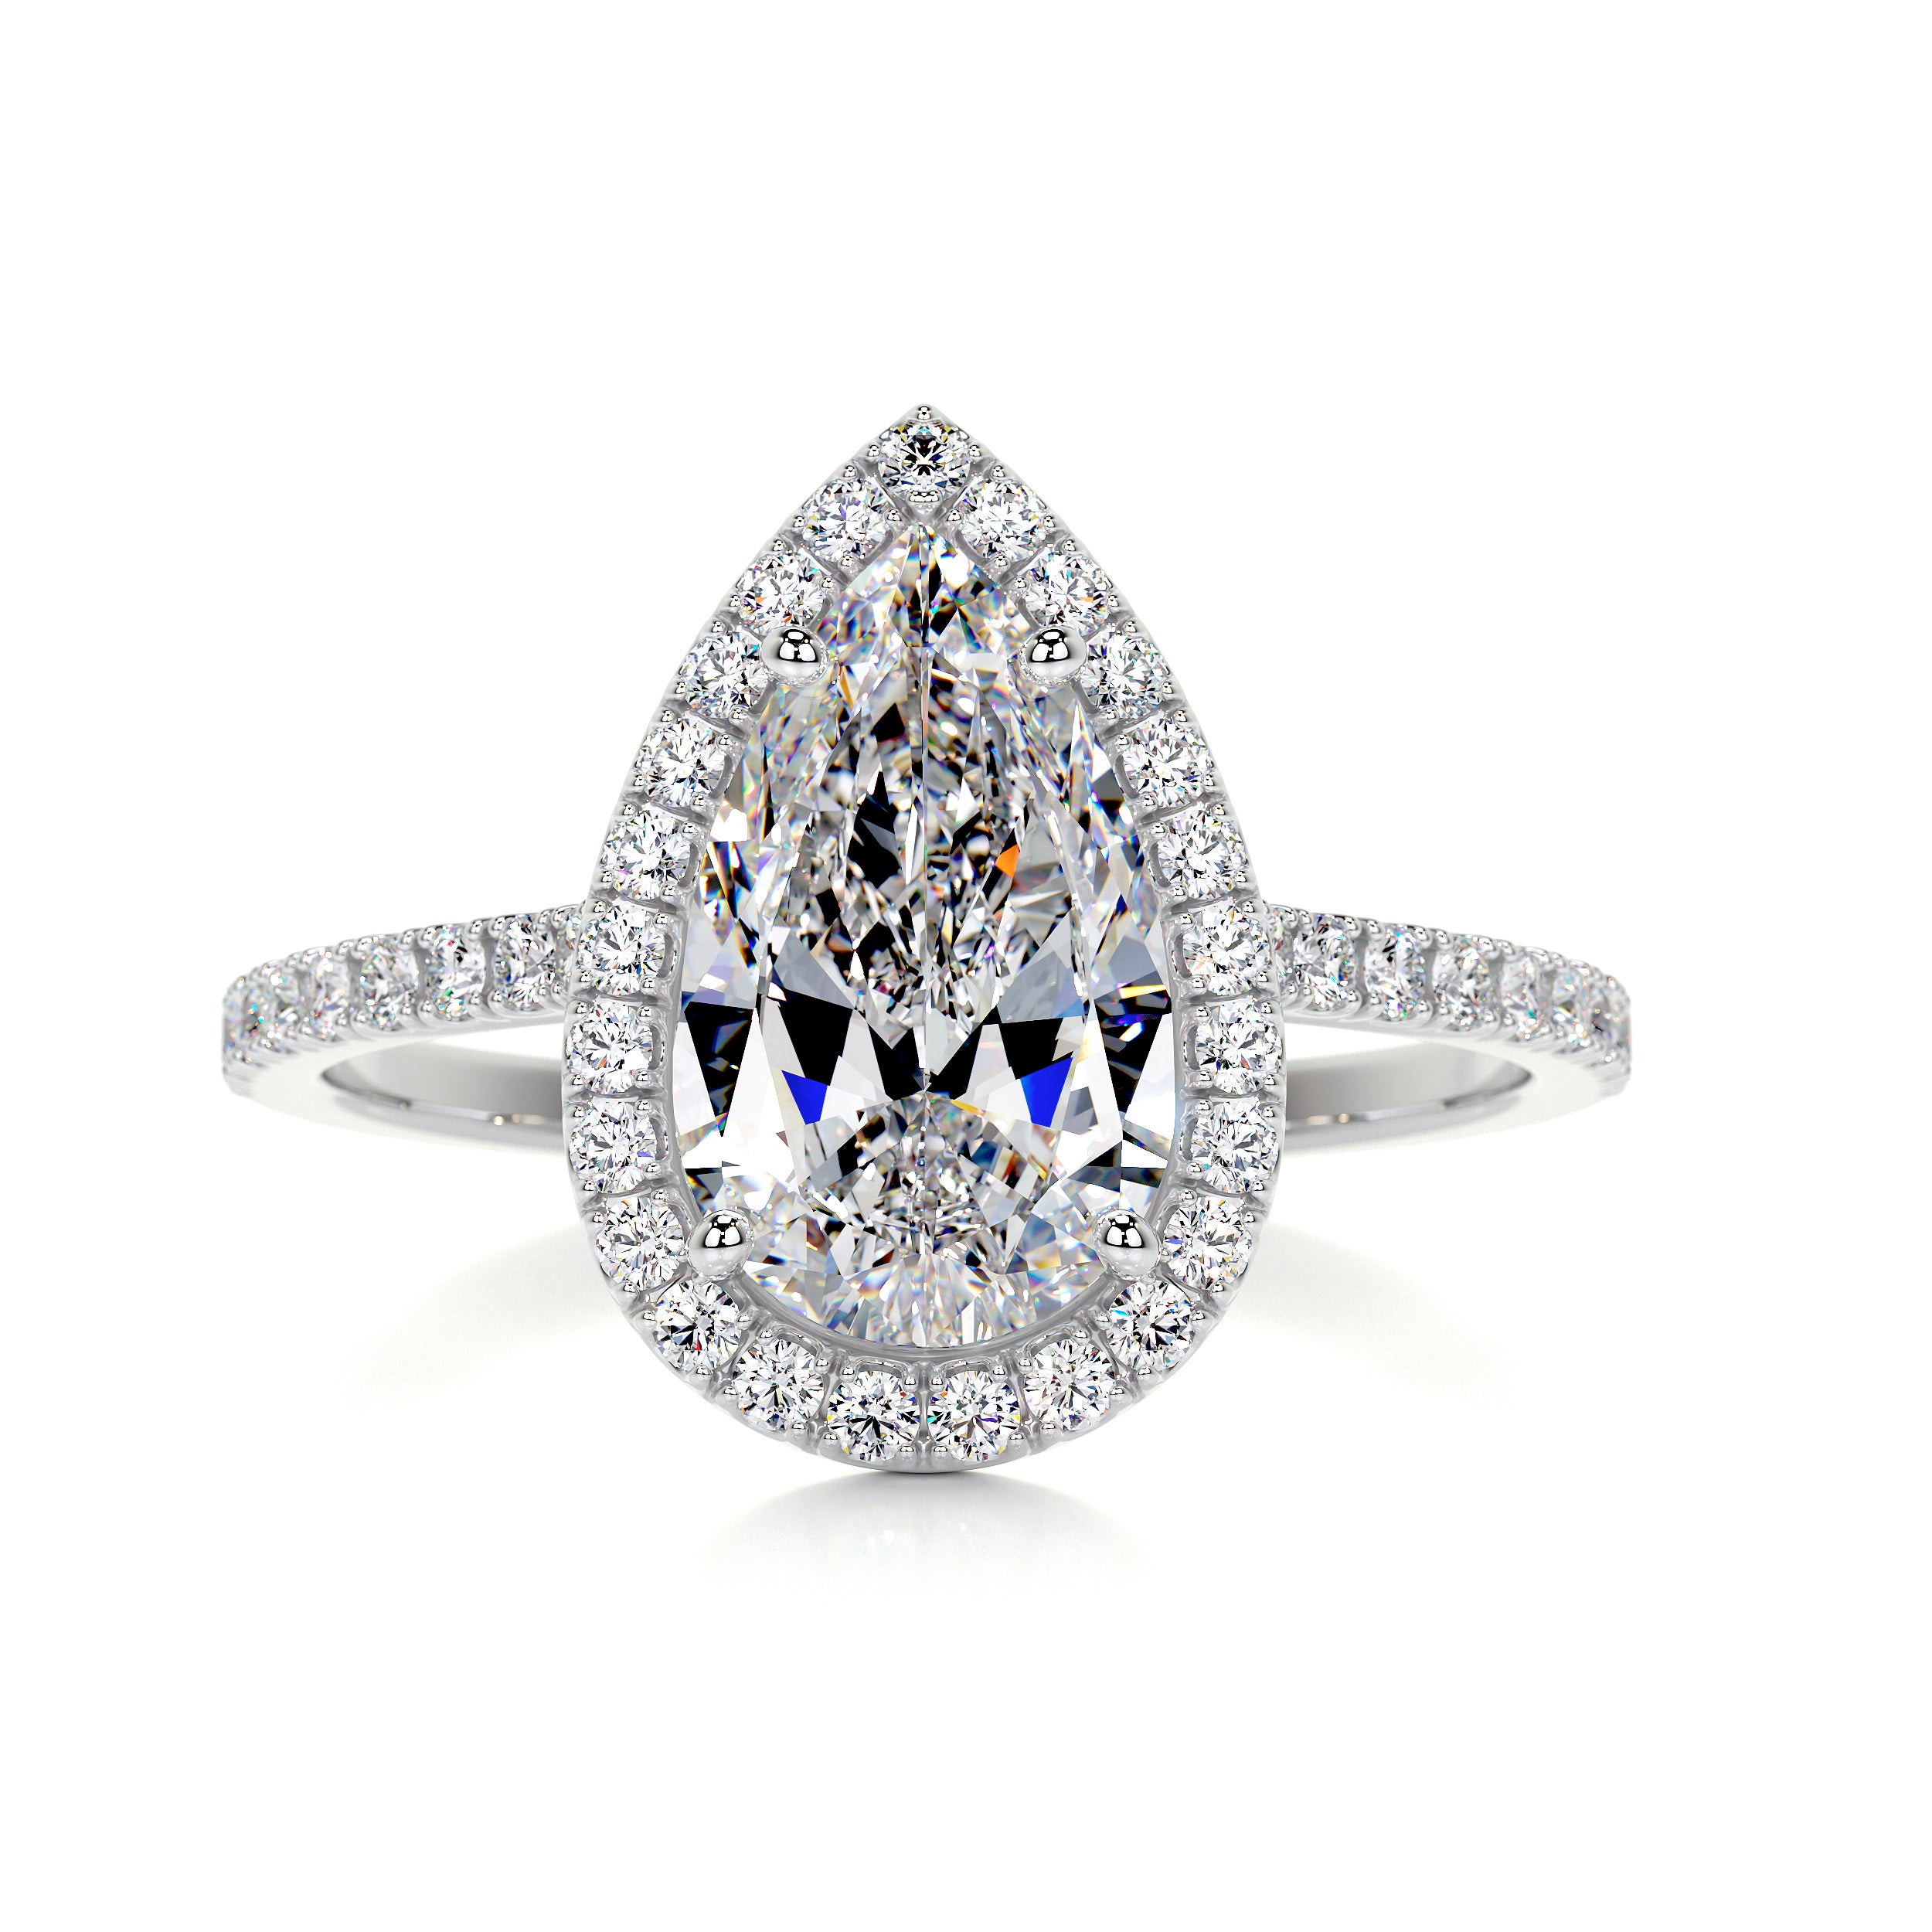 Sophia Moissanite & Diamonds Ring   (2.5 Carat) -Platinum